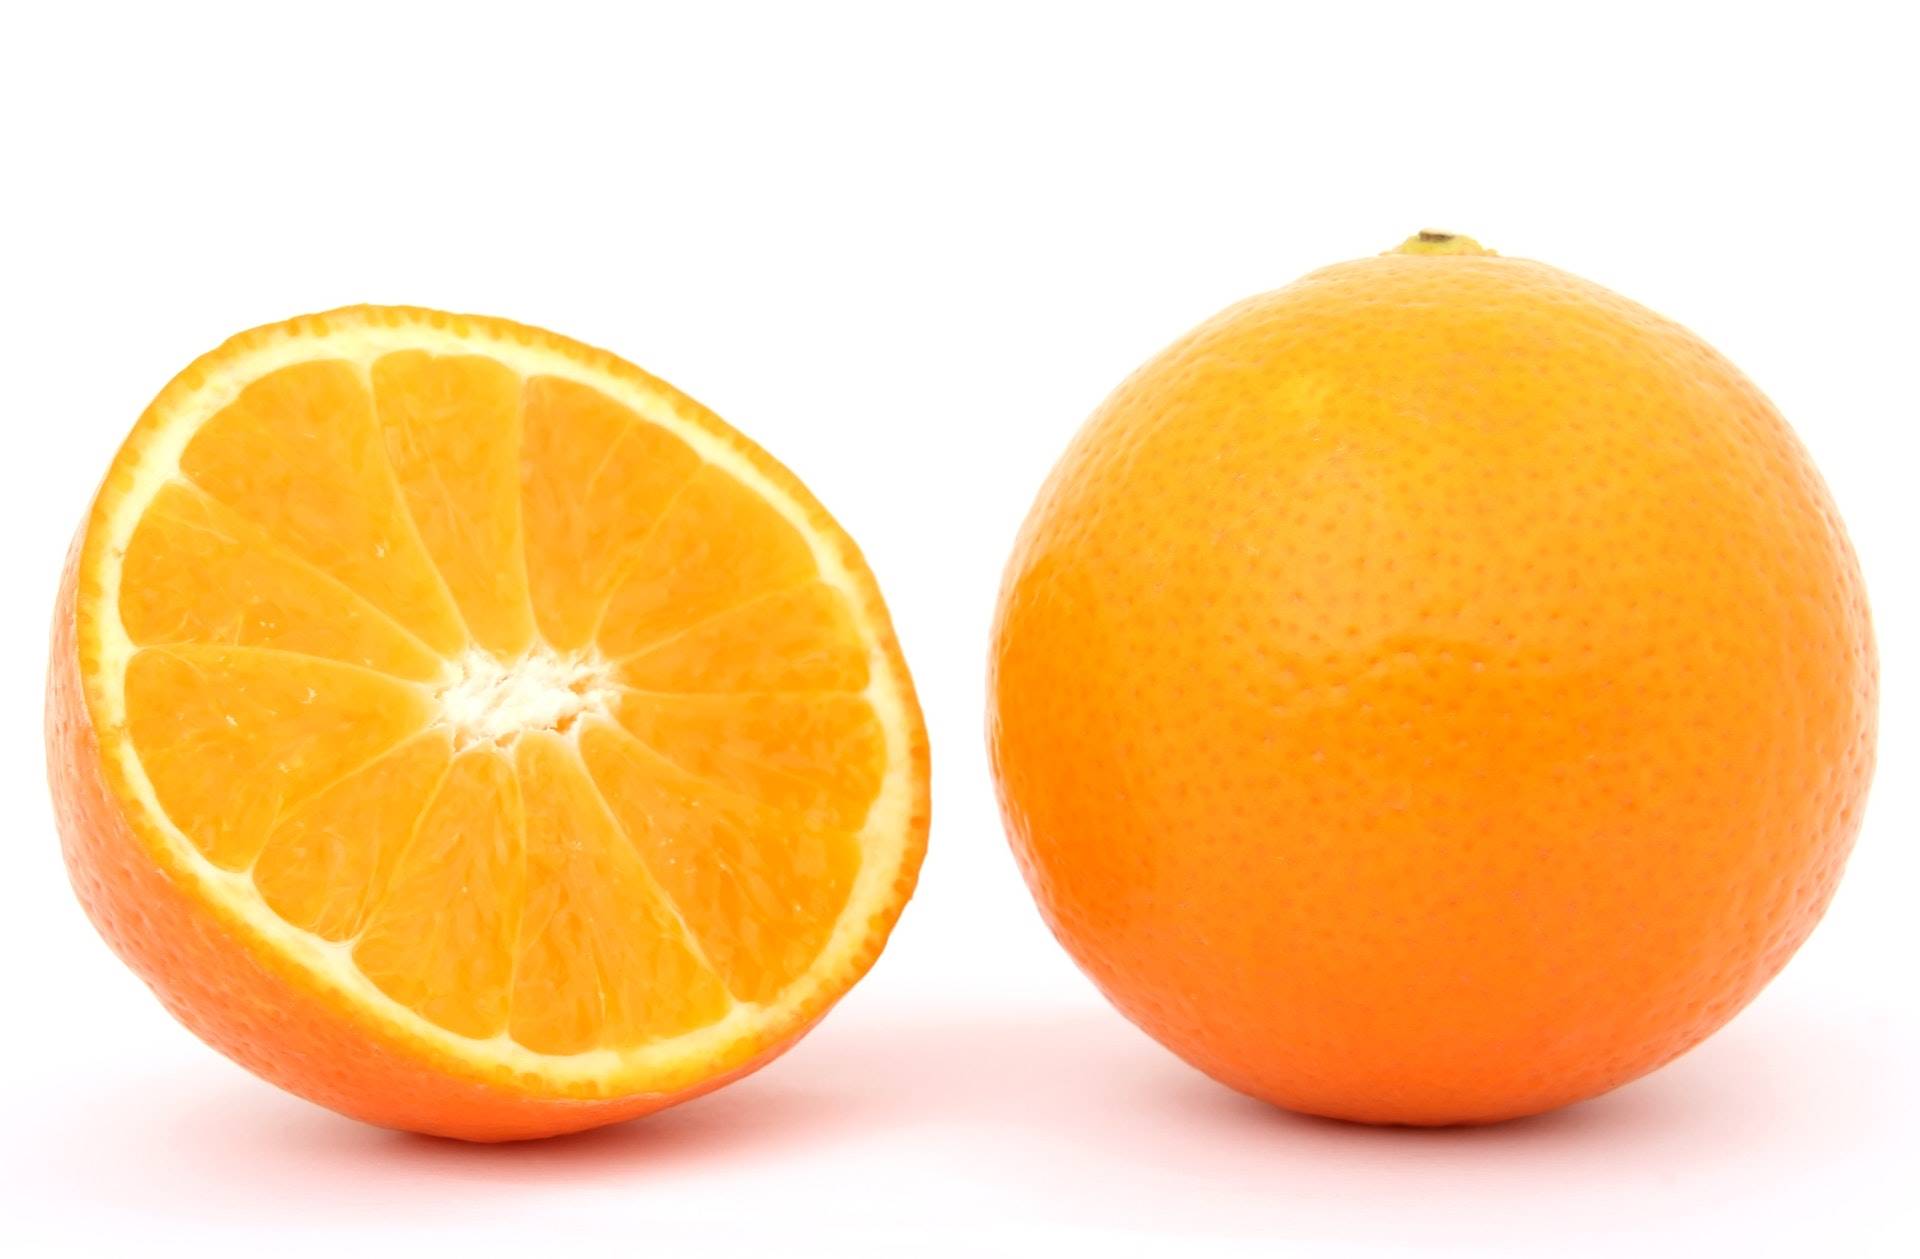 oleo essencial de laranja doce beneficios